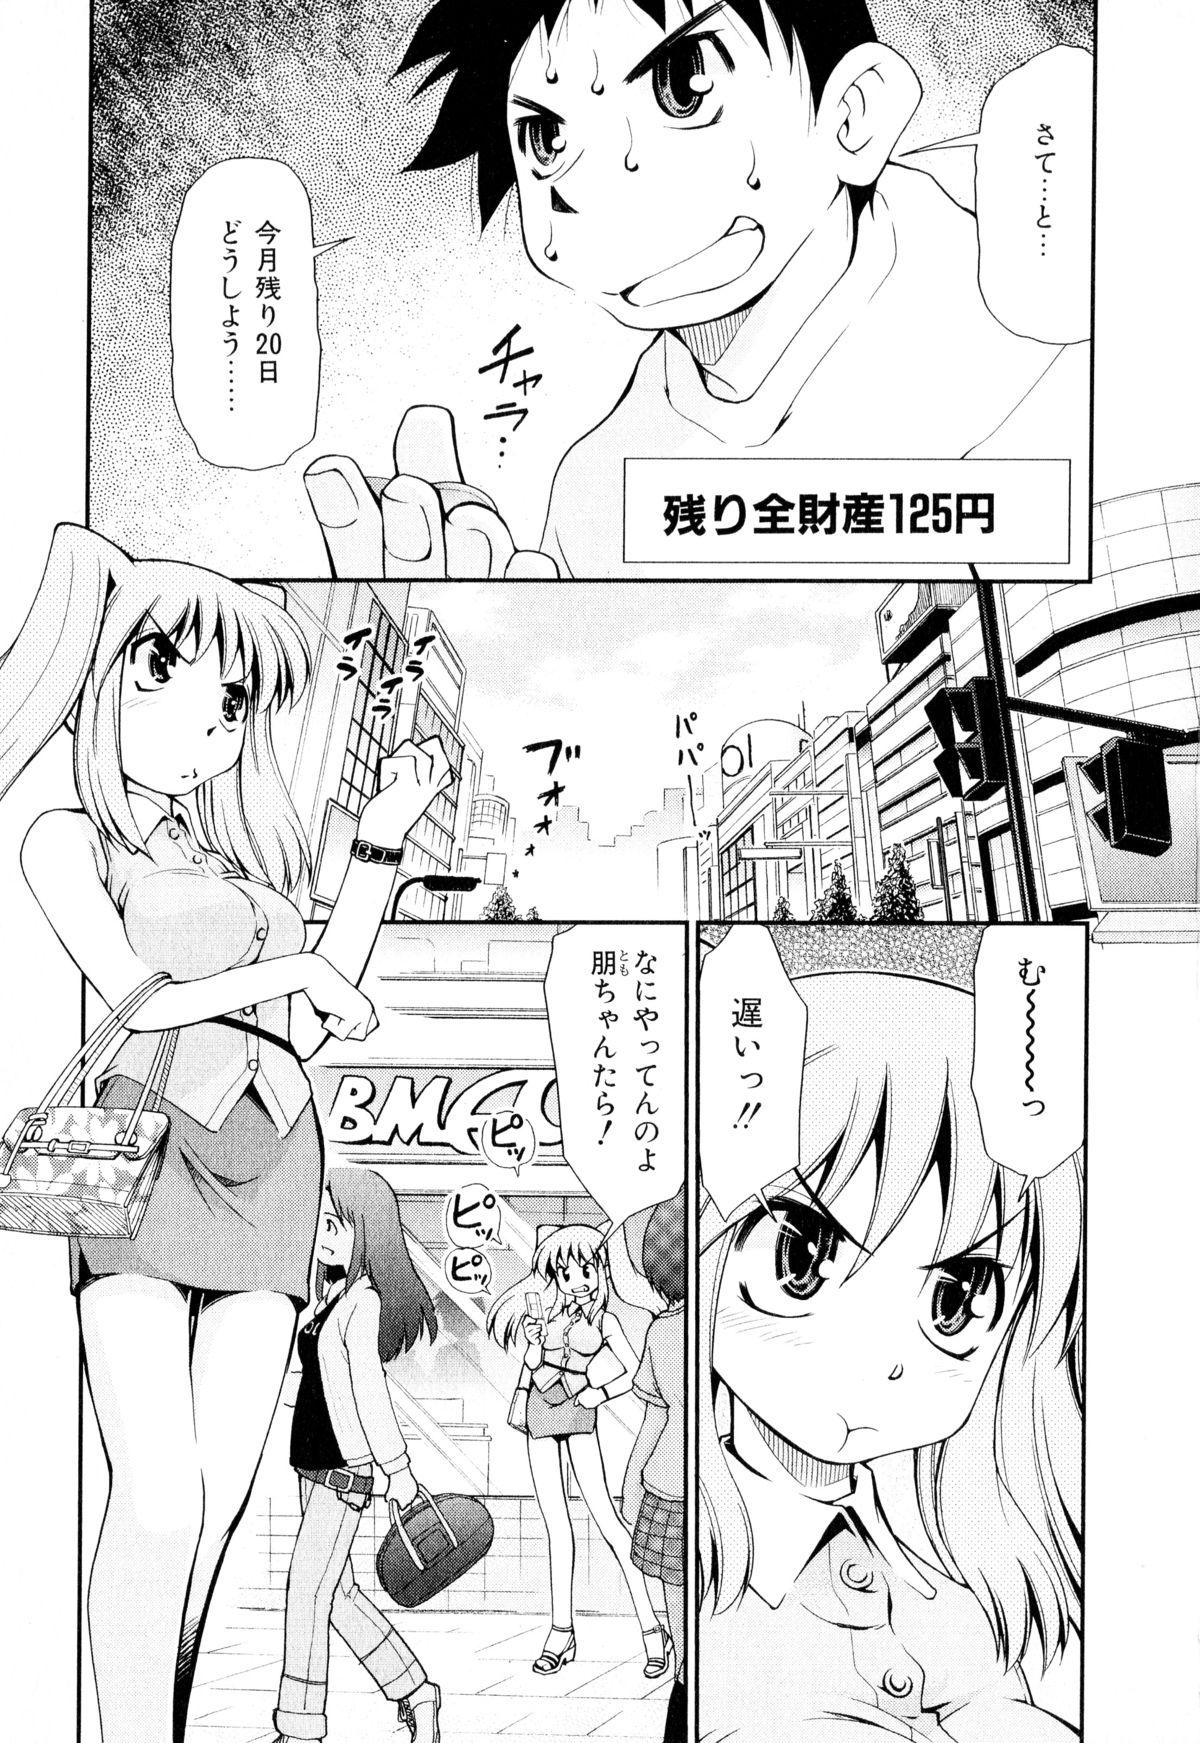 Spread Gekihin Milf Cougar - Page 6